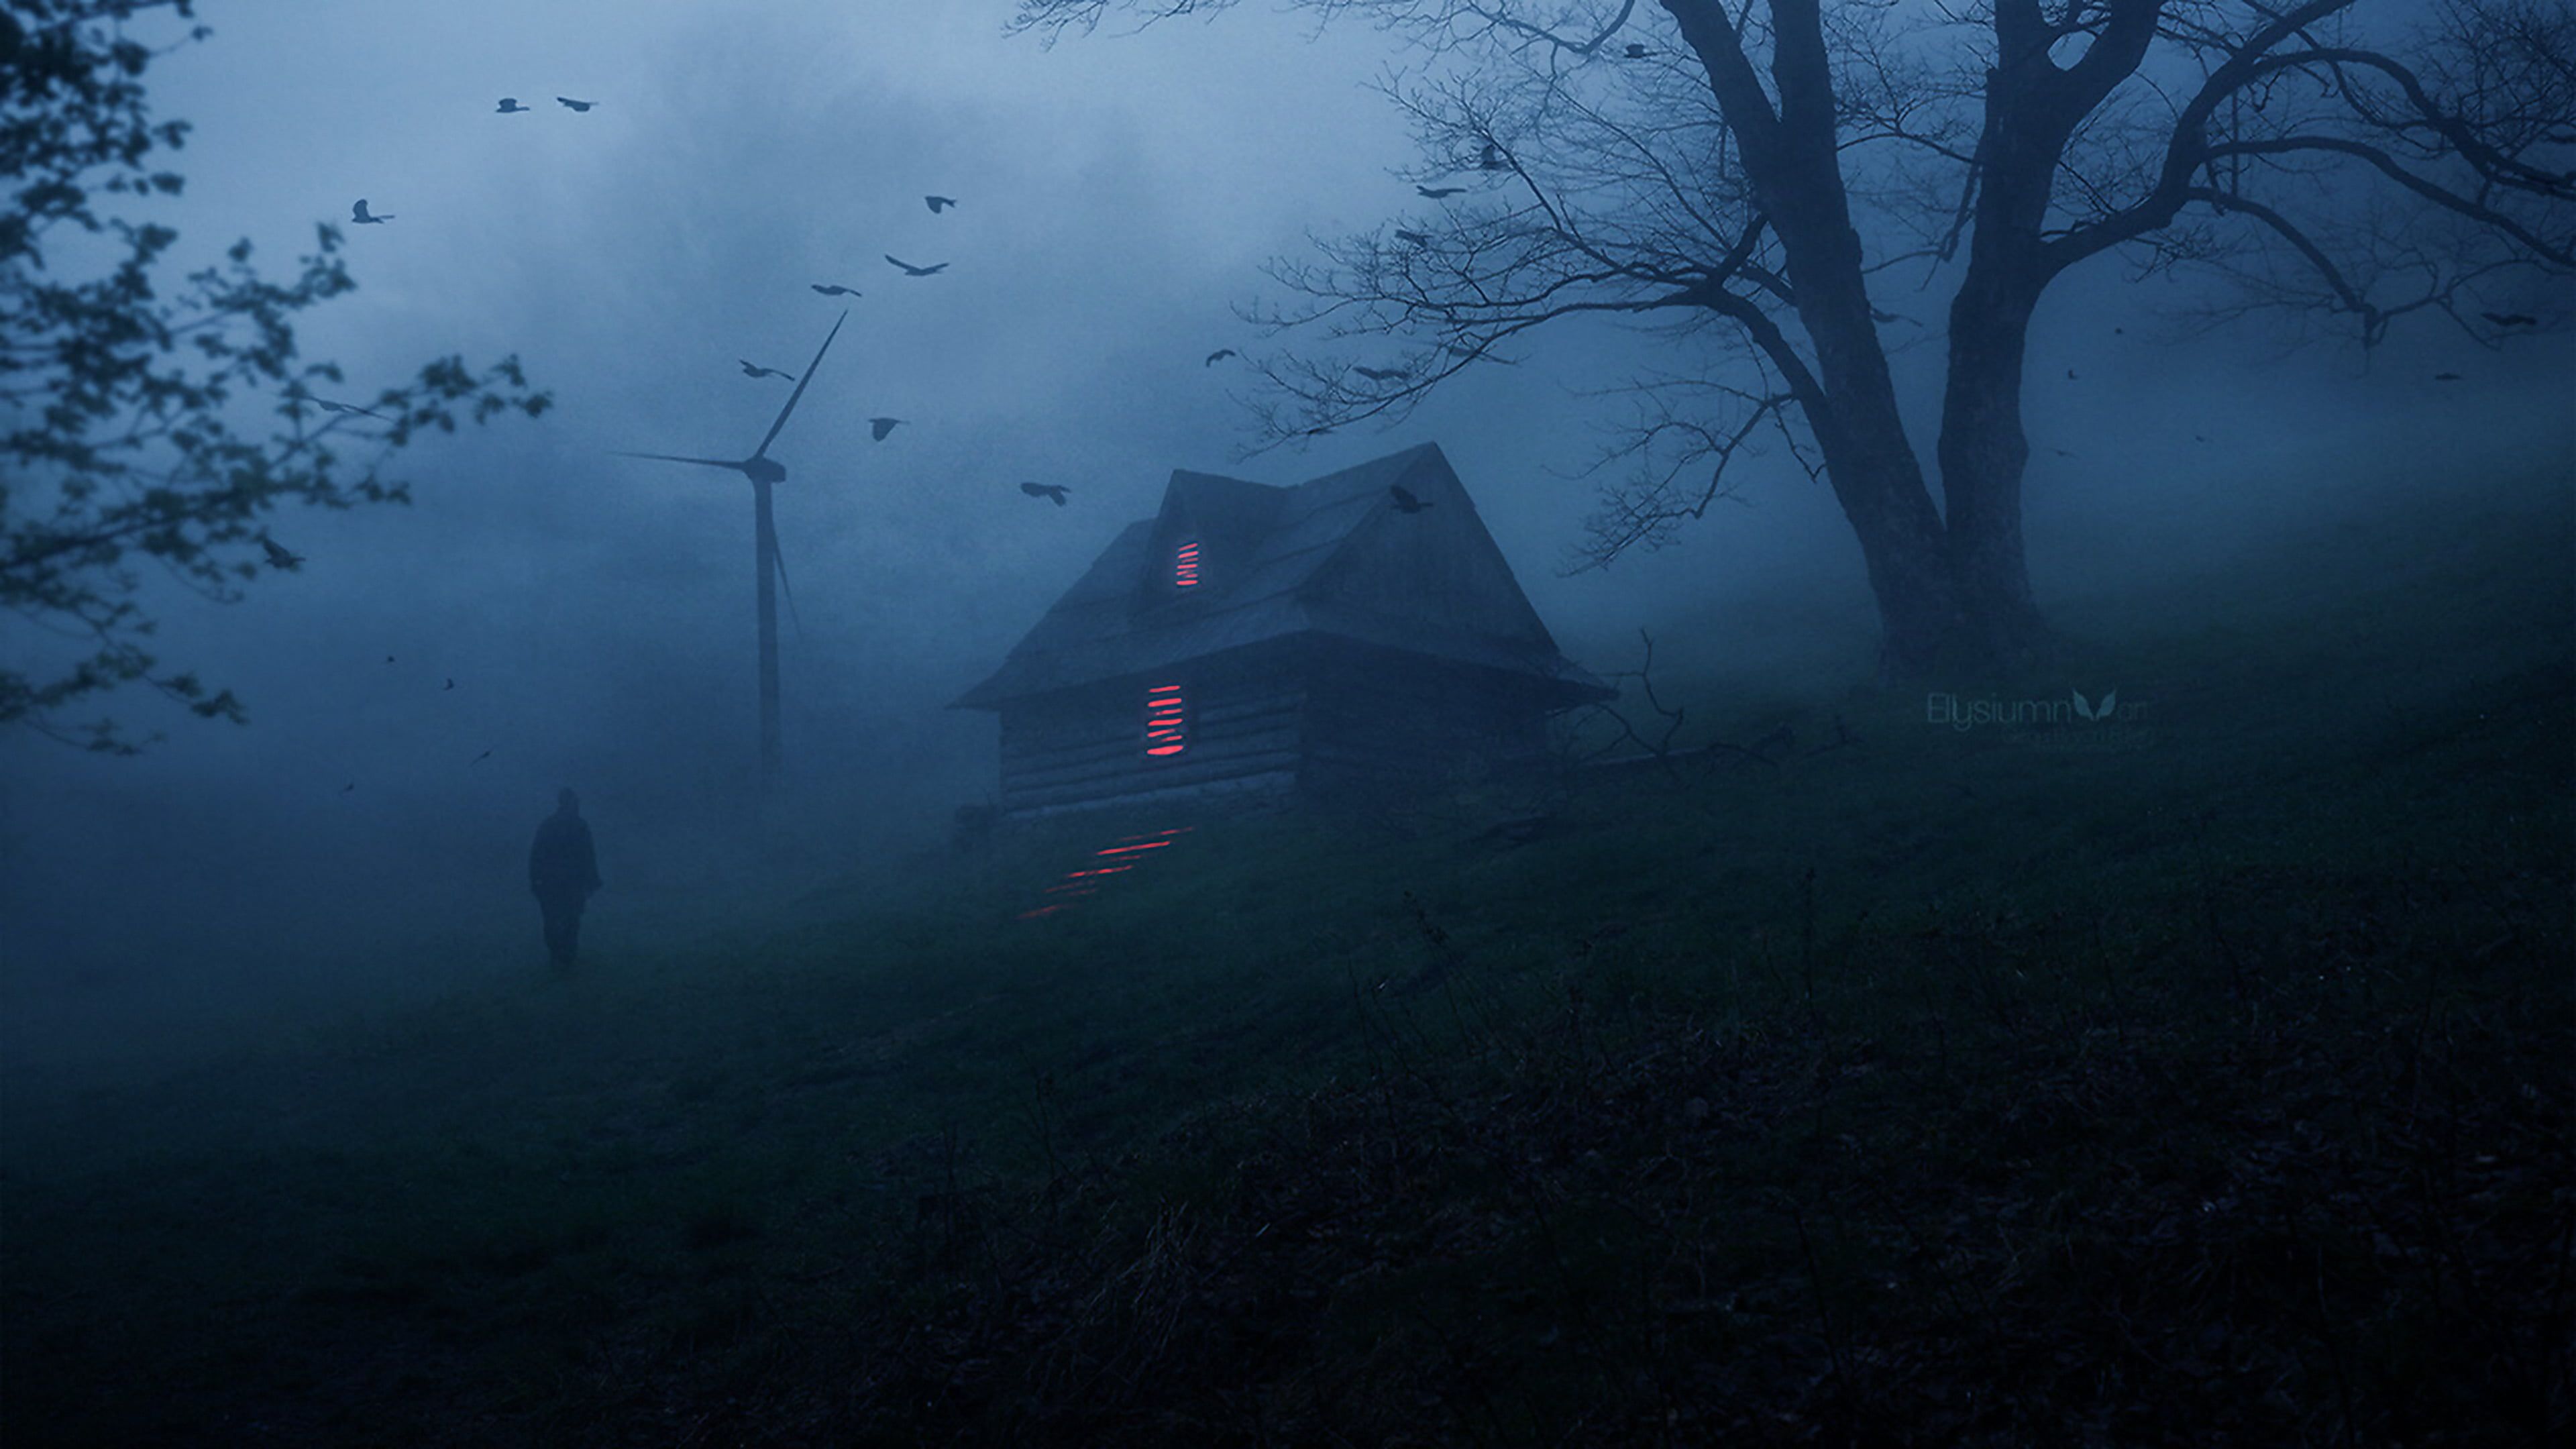 Horror House Terror Ambient Atmosphere Mist Creepy Dark